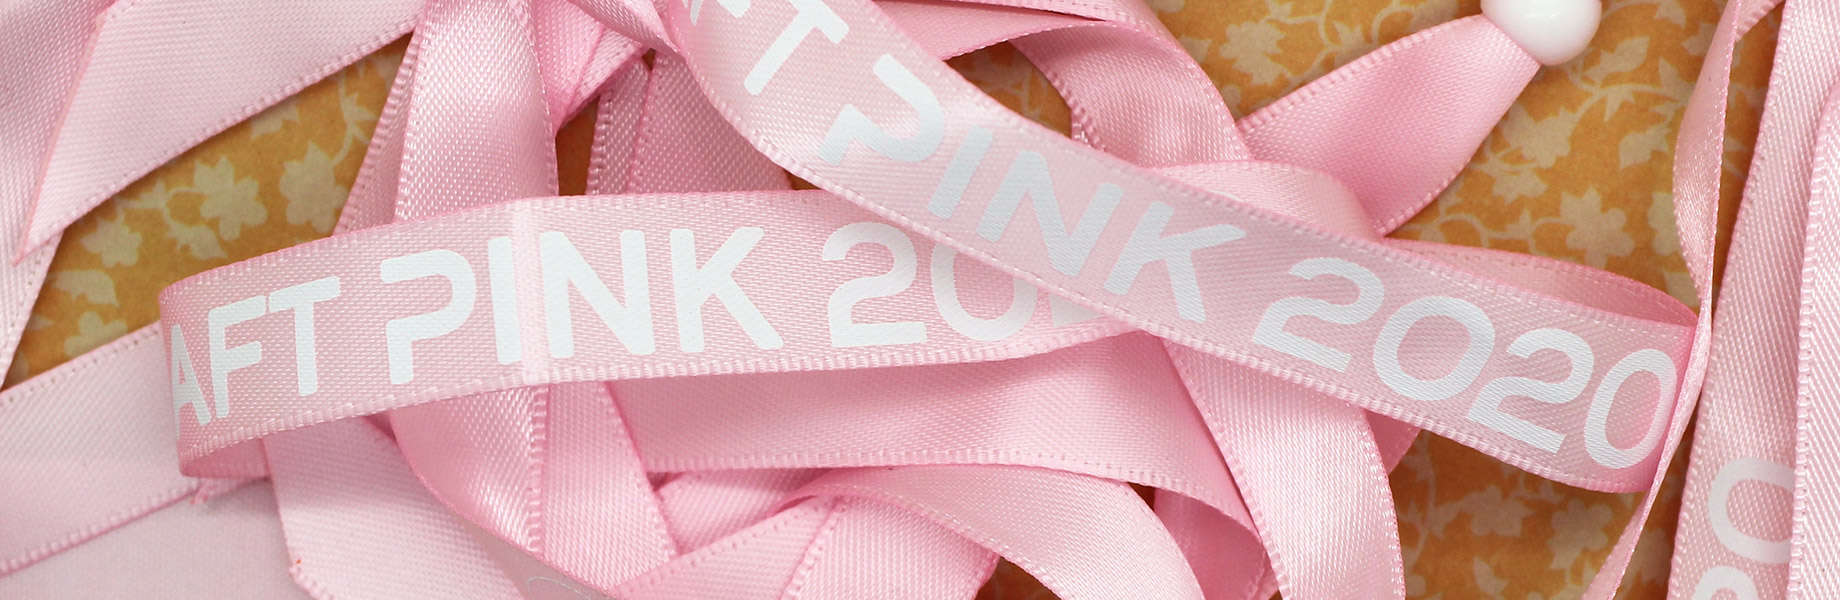 Bracelets en tissu offerts pour subventionner la participation de Daft Pink au rallye solidaire Roses des Andes